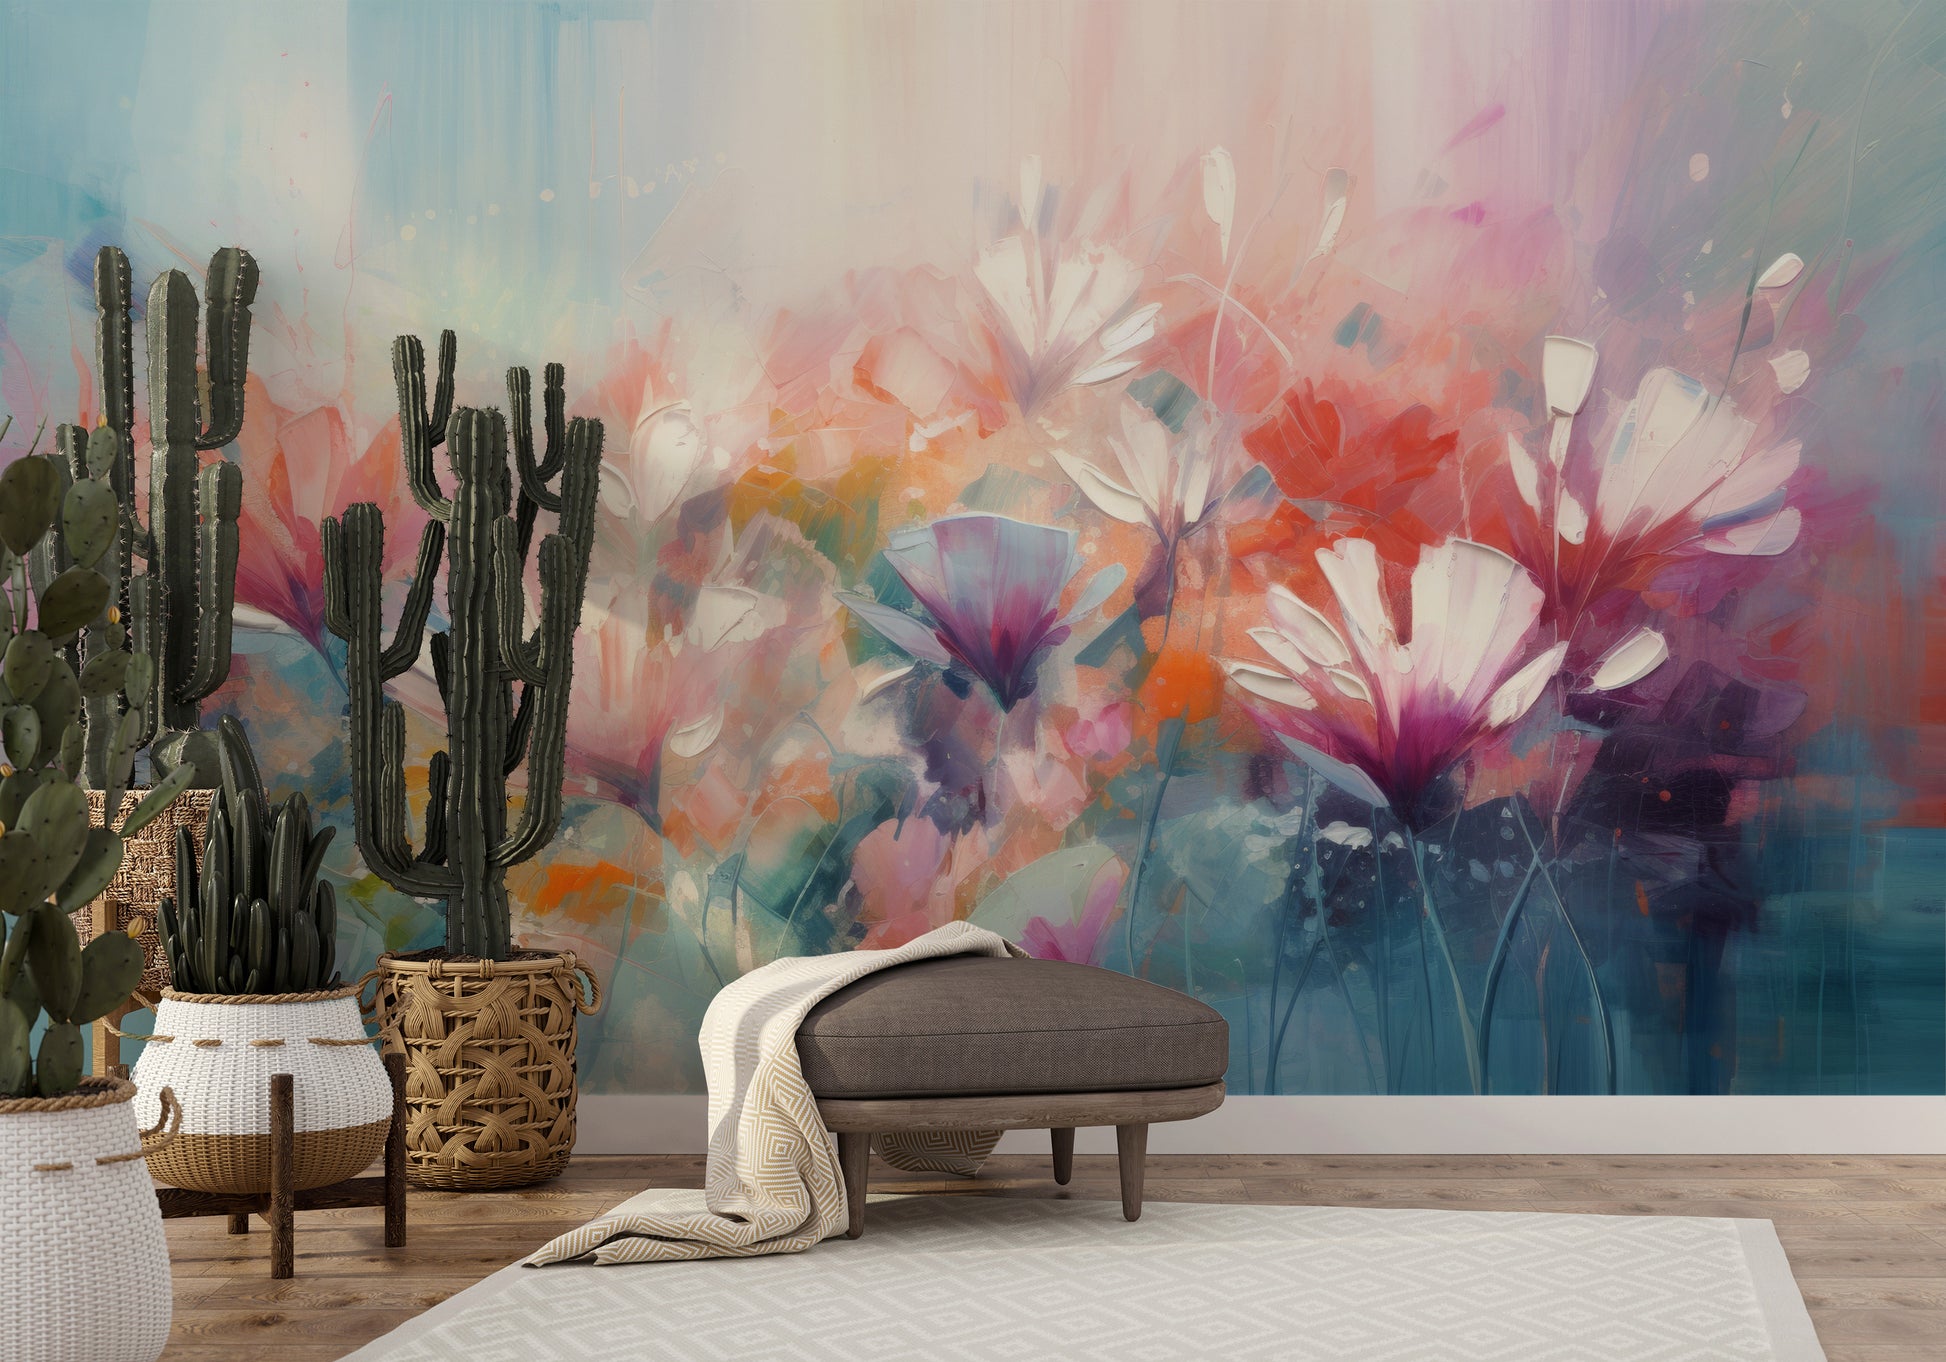 Fototapeta malowana o nazwie Lively Floral Symphony pokazana w aranżacji wnętrza.